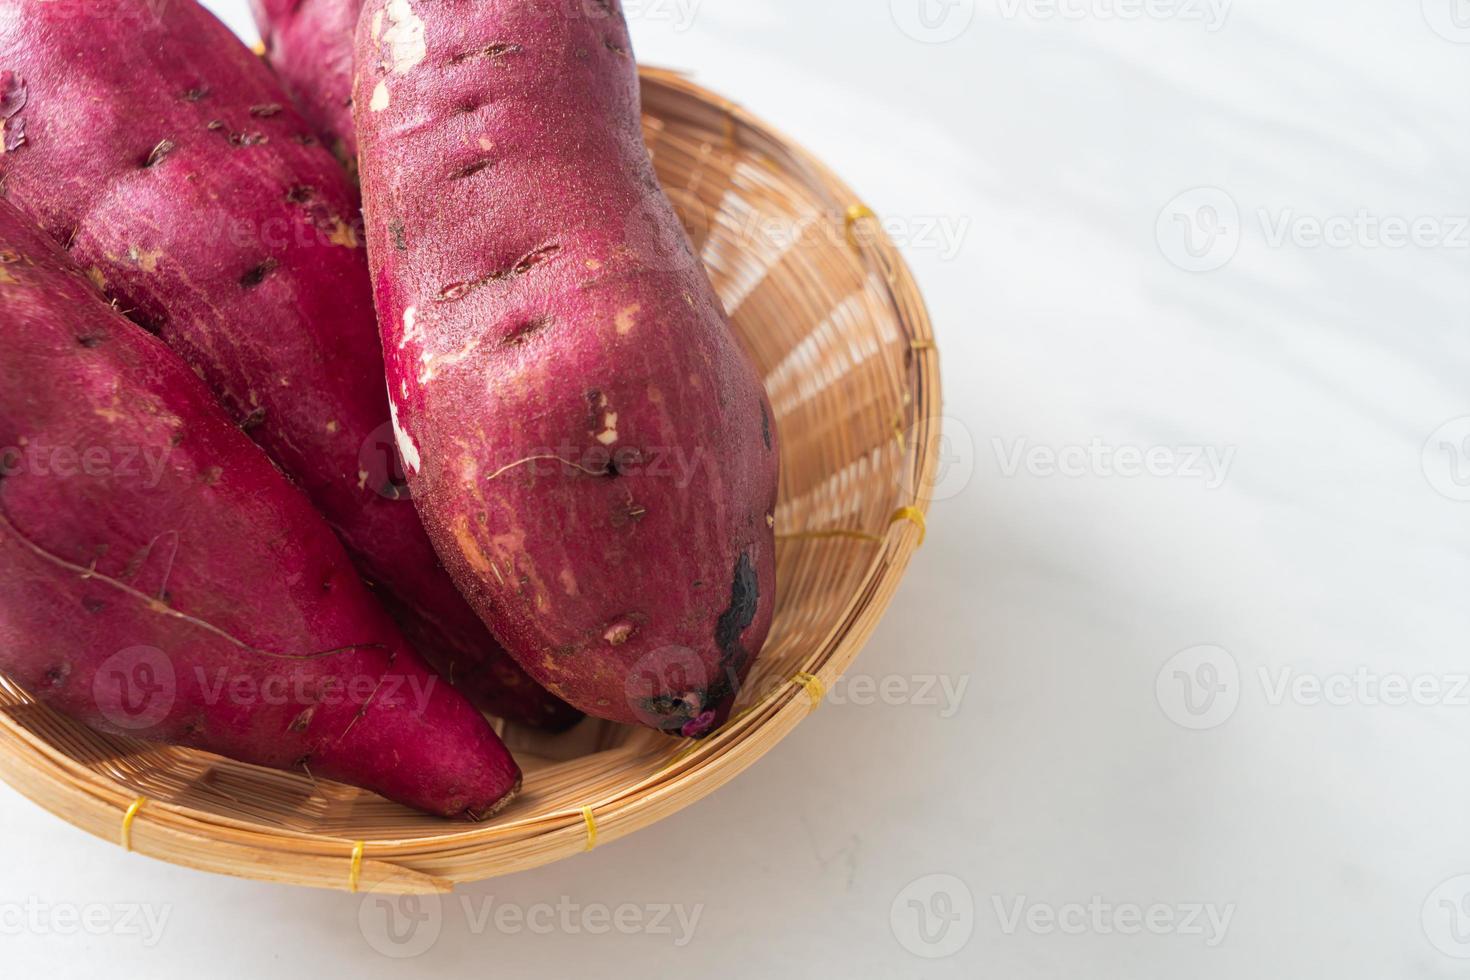 patate dolci giapponesi su cestino foto